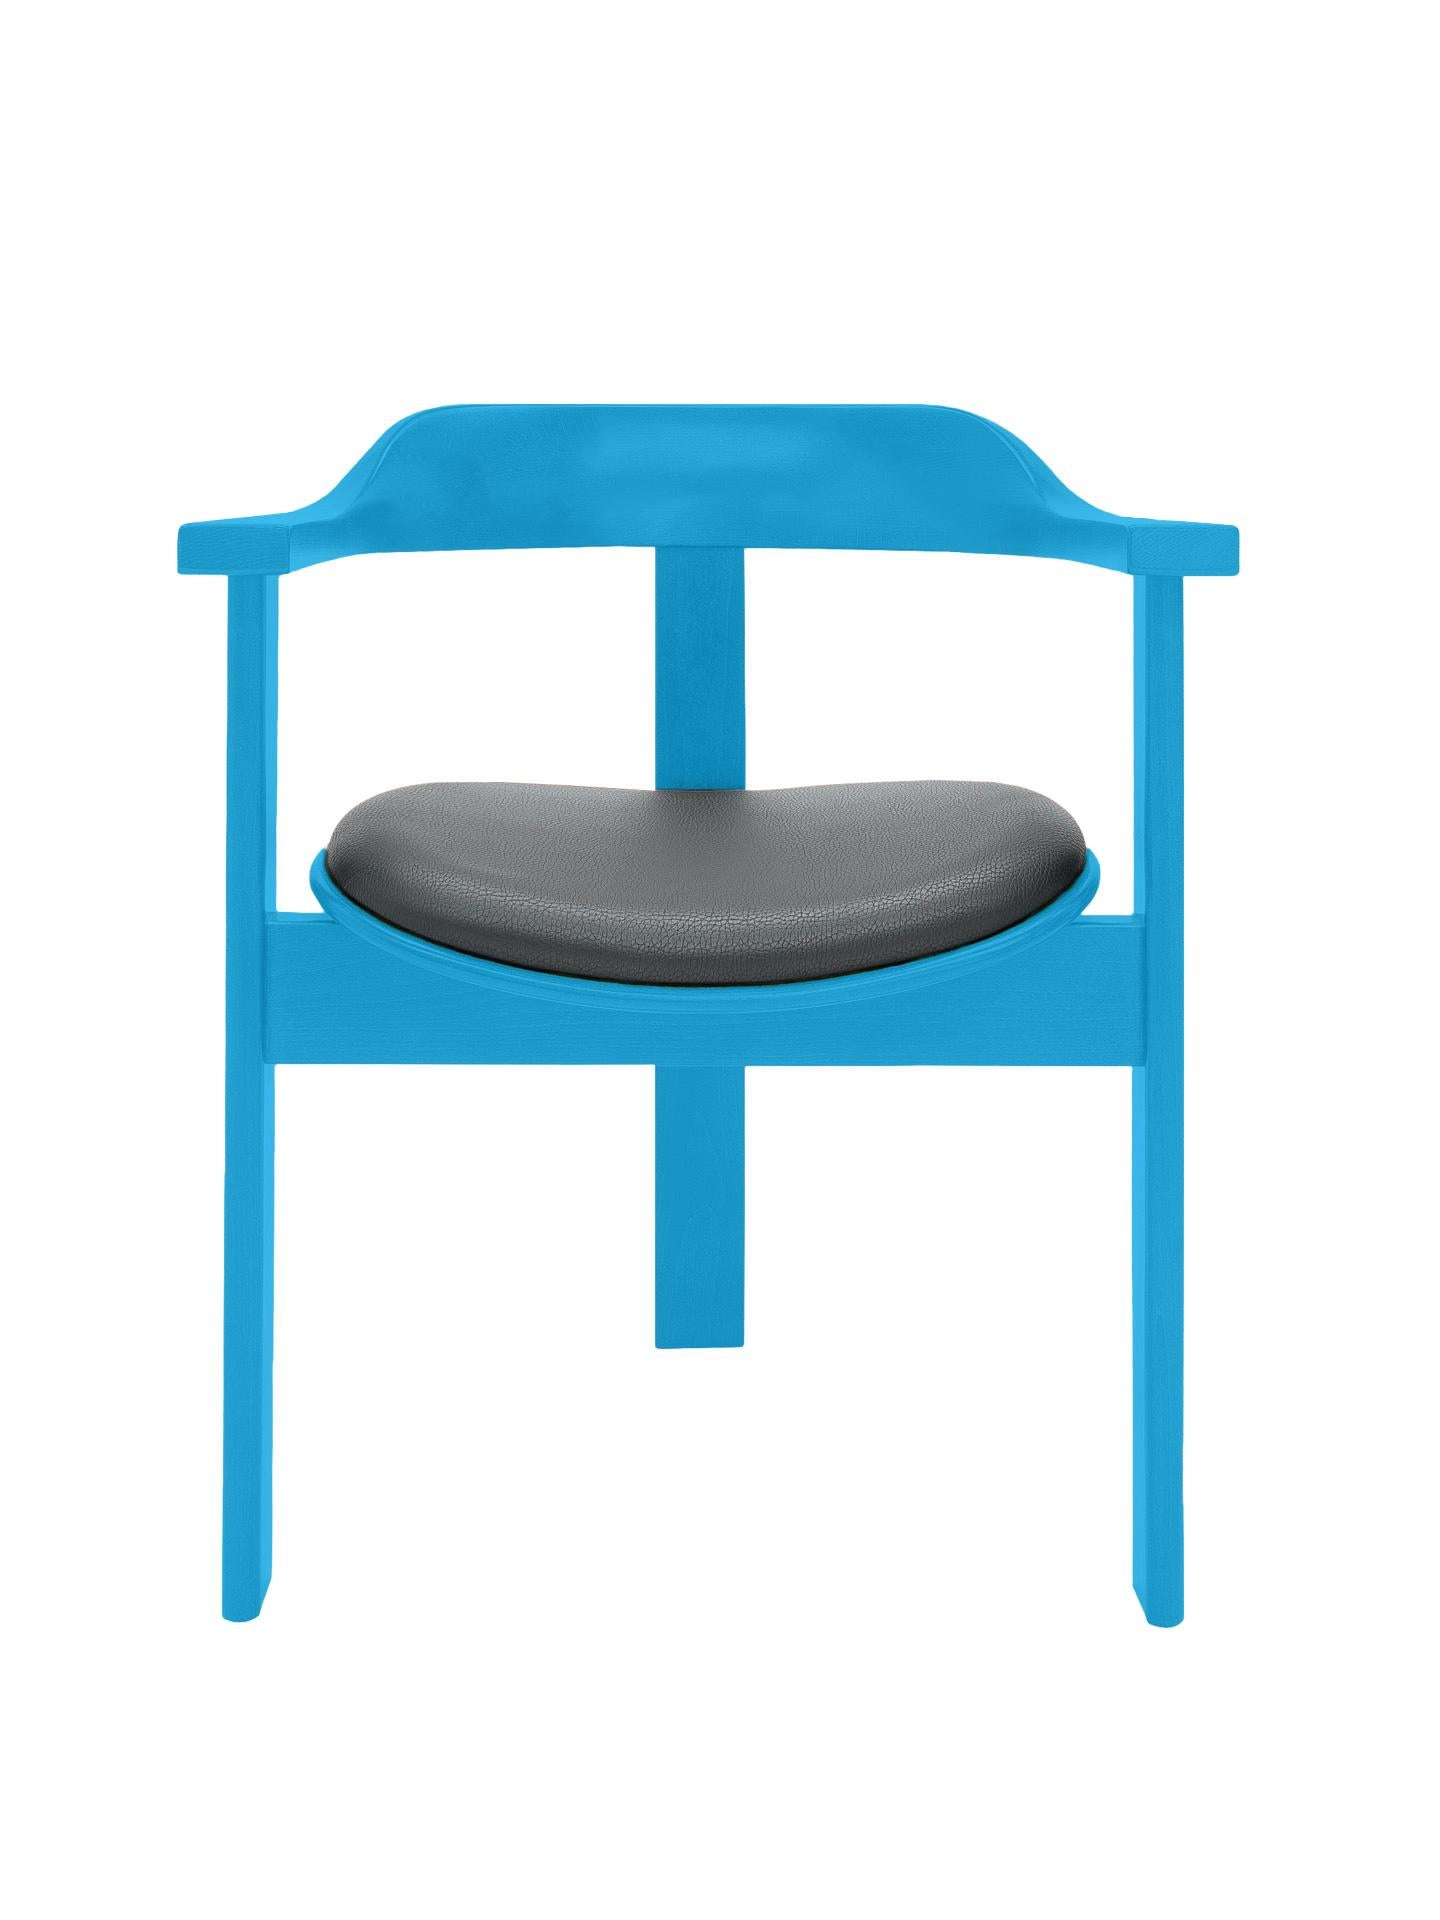 La chaise Haussmann est une pièce vibrante et intemporelle de confort et d'élégance.

Cette chaise unique à trois pieds a été présentée pour la première fois à l'